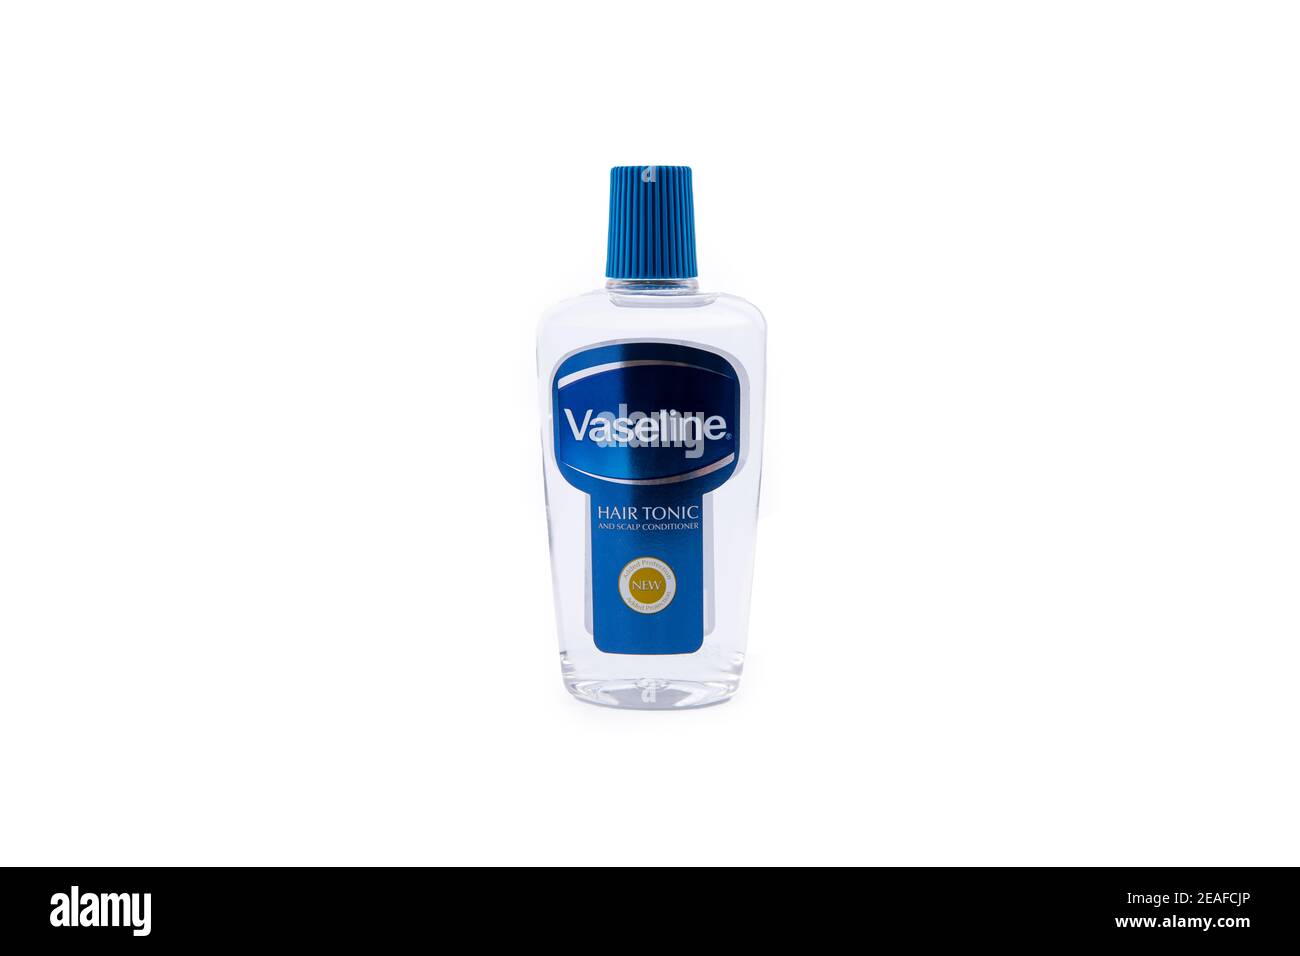 Vaseline Hair tonic on white background Stock Photo - Alamy